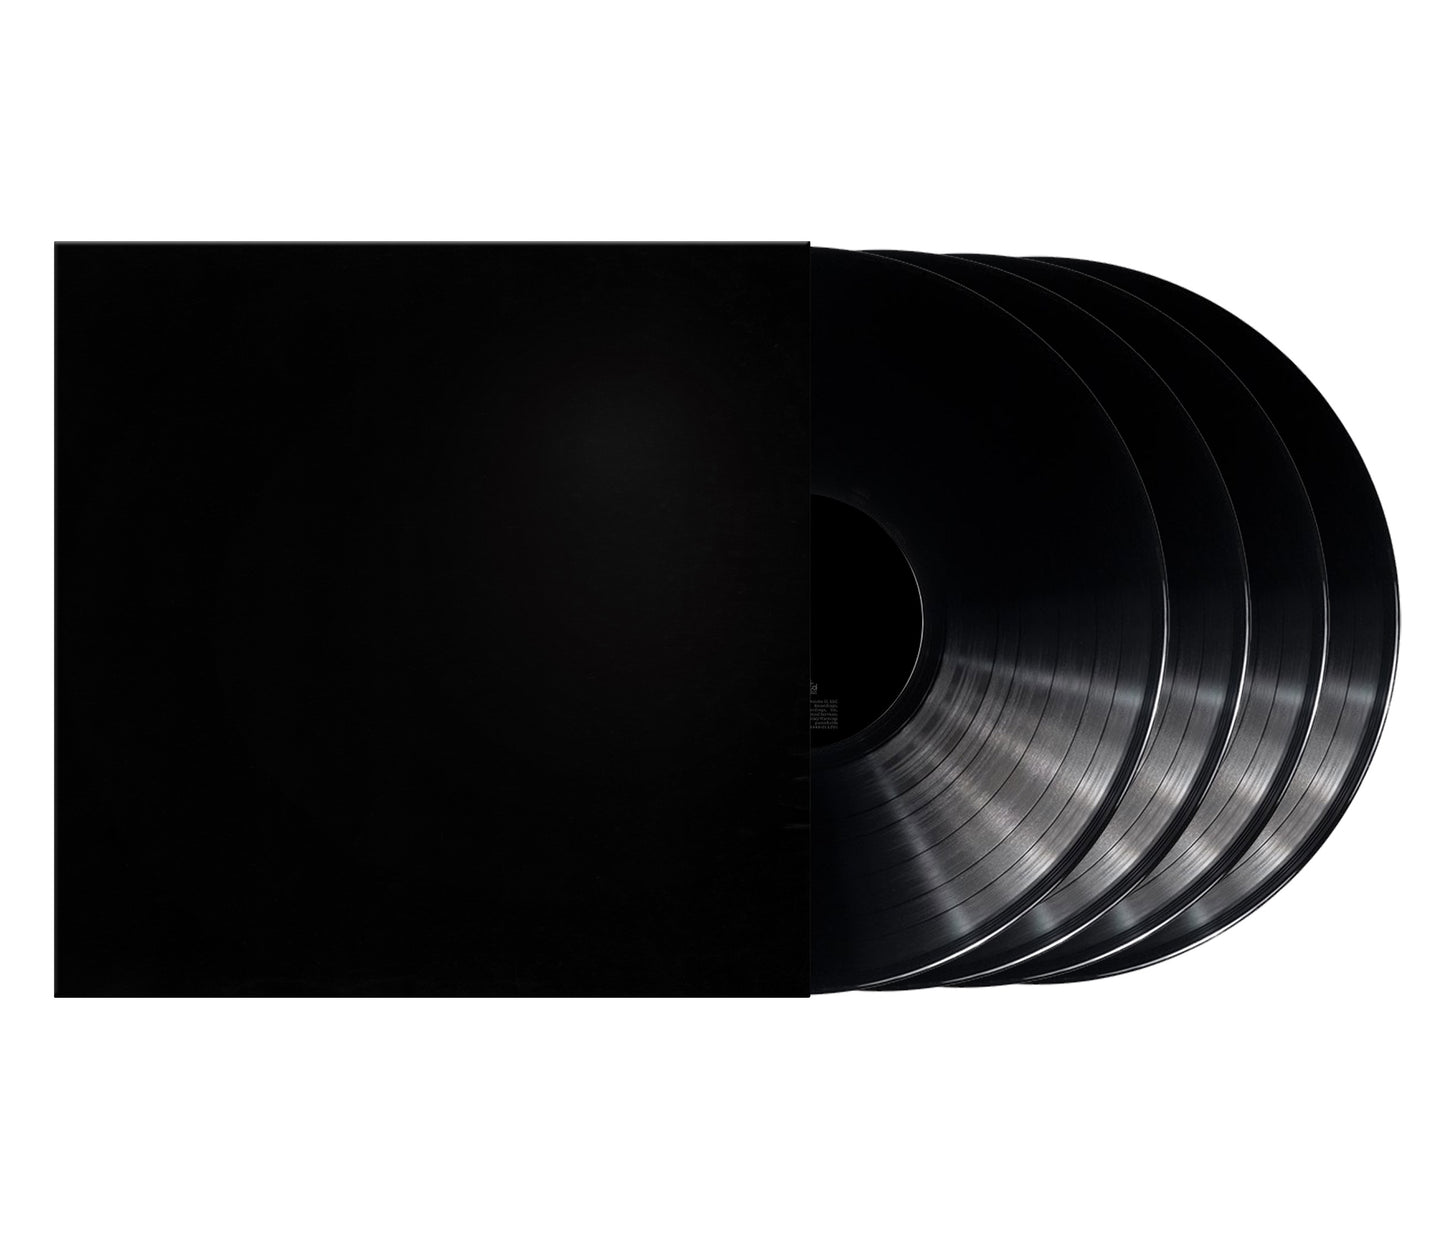 Kanye West's Donda vinyl deluxe 4 LP album